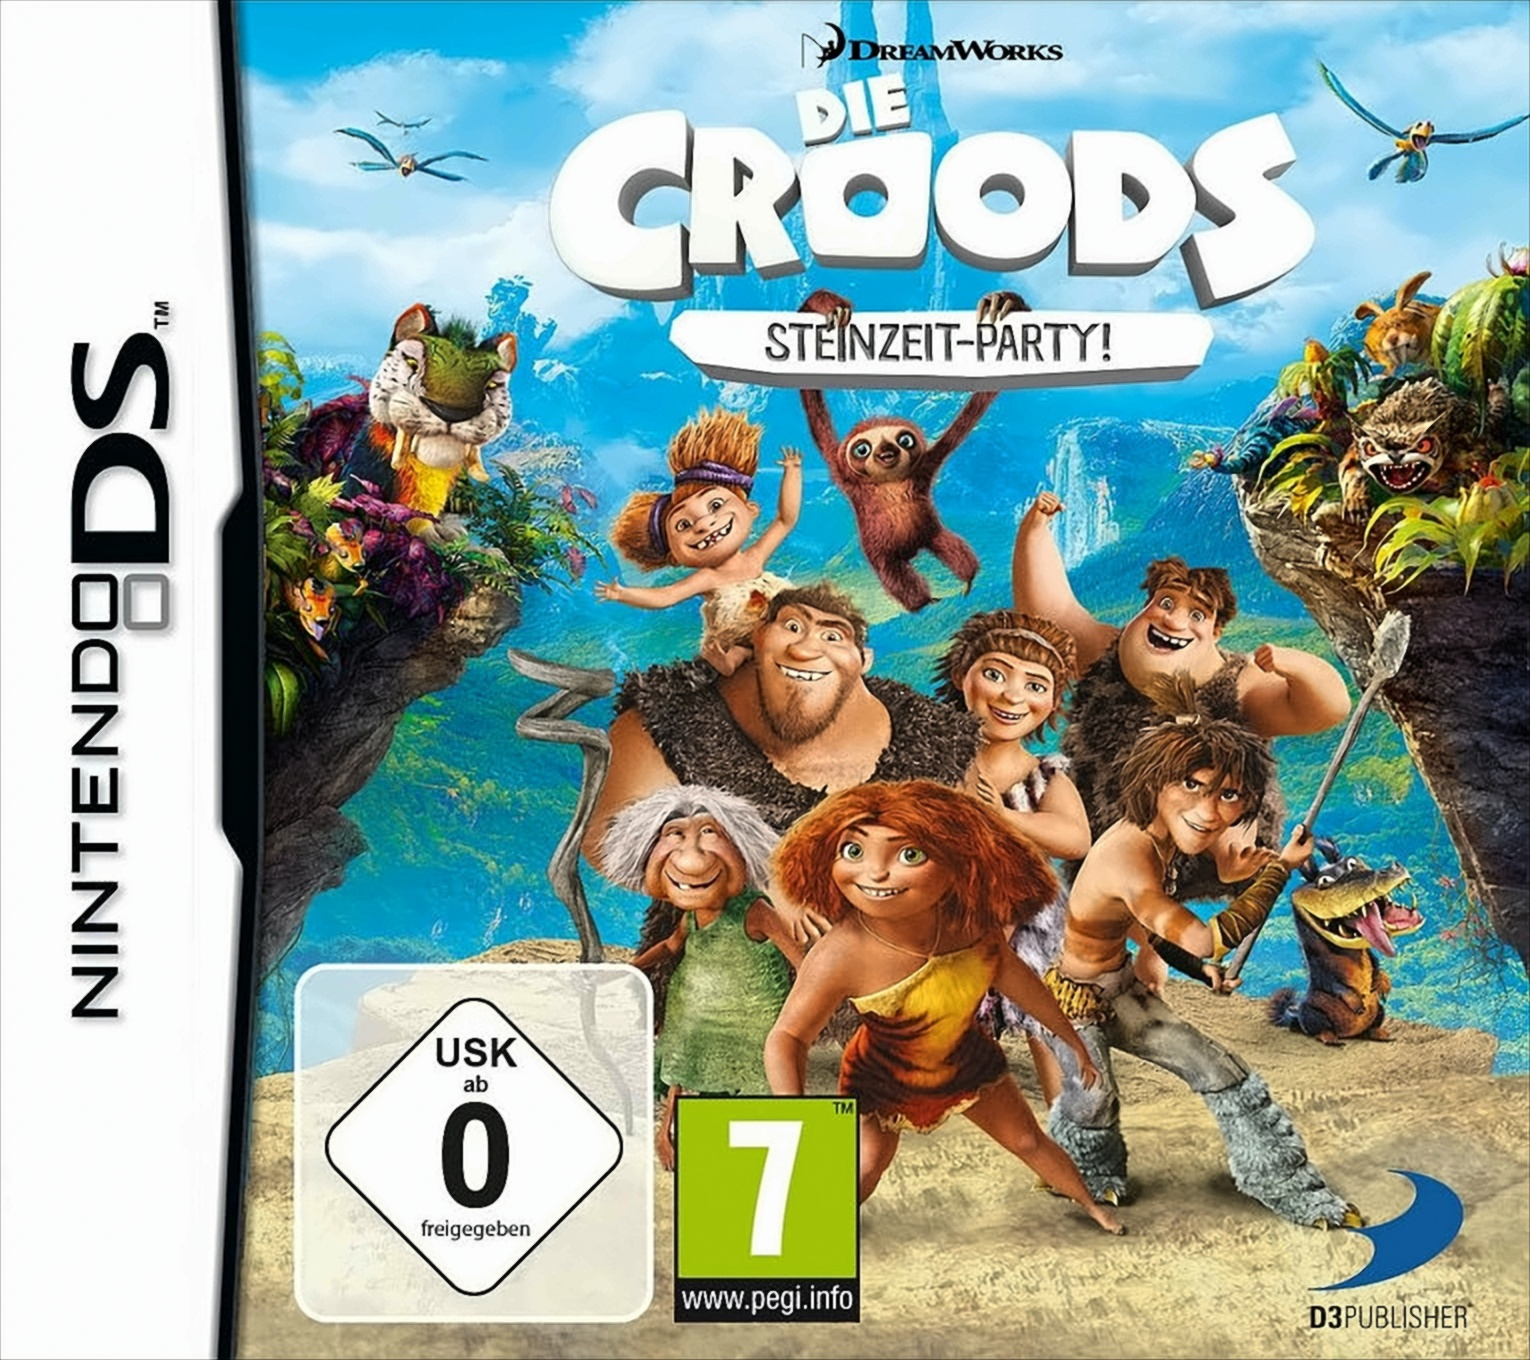 DS] Steinzeit-Party Croods: [Nintendo Die -